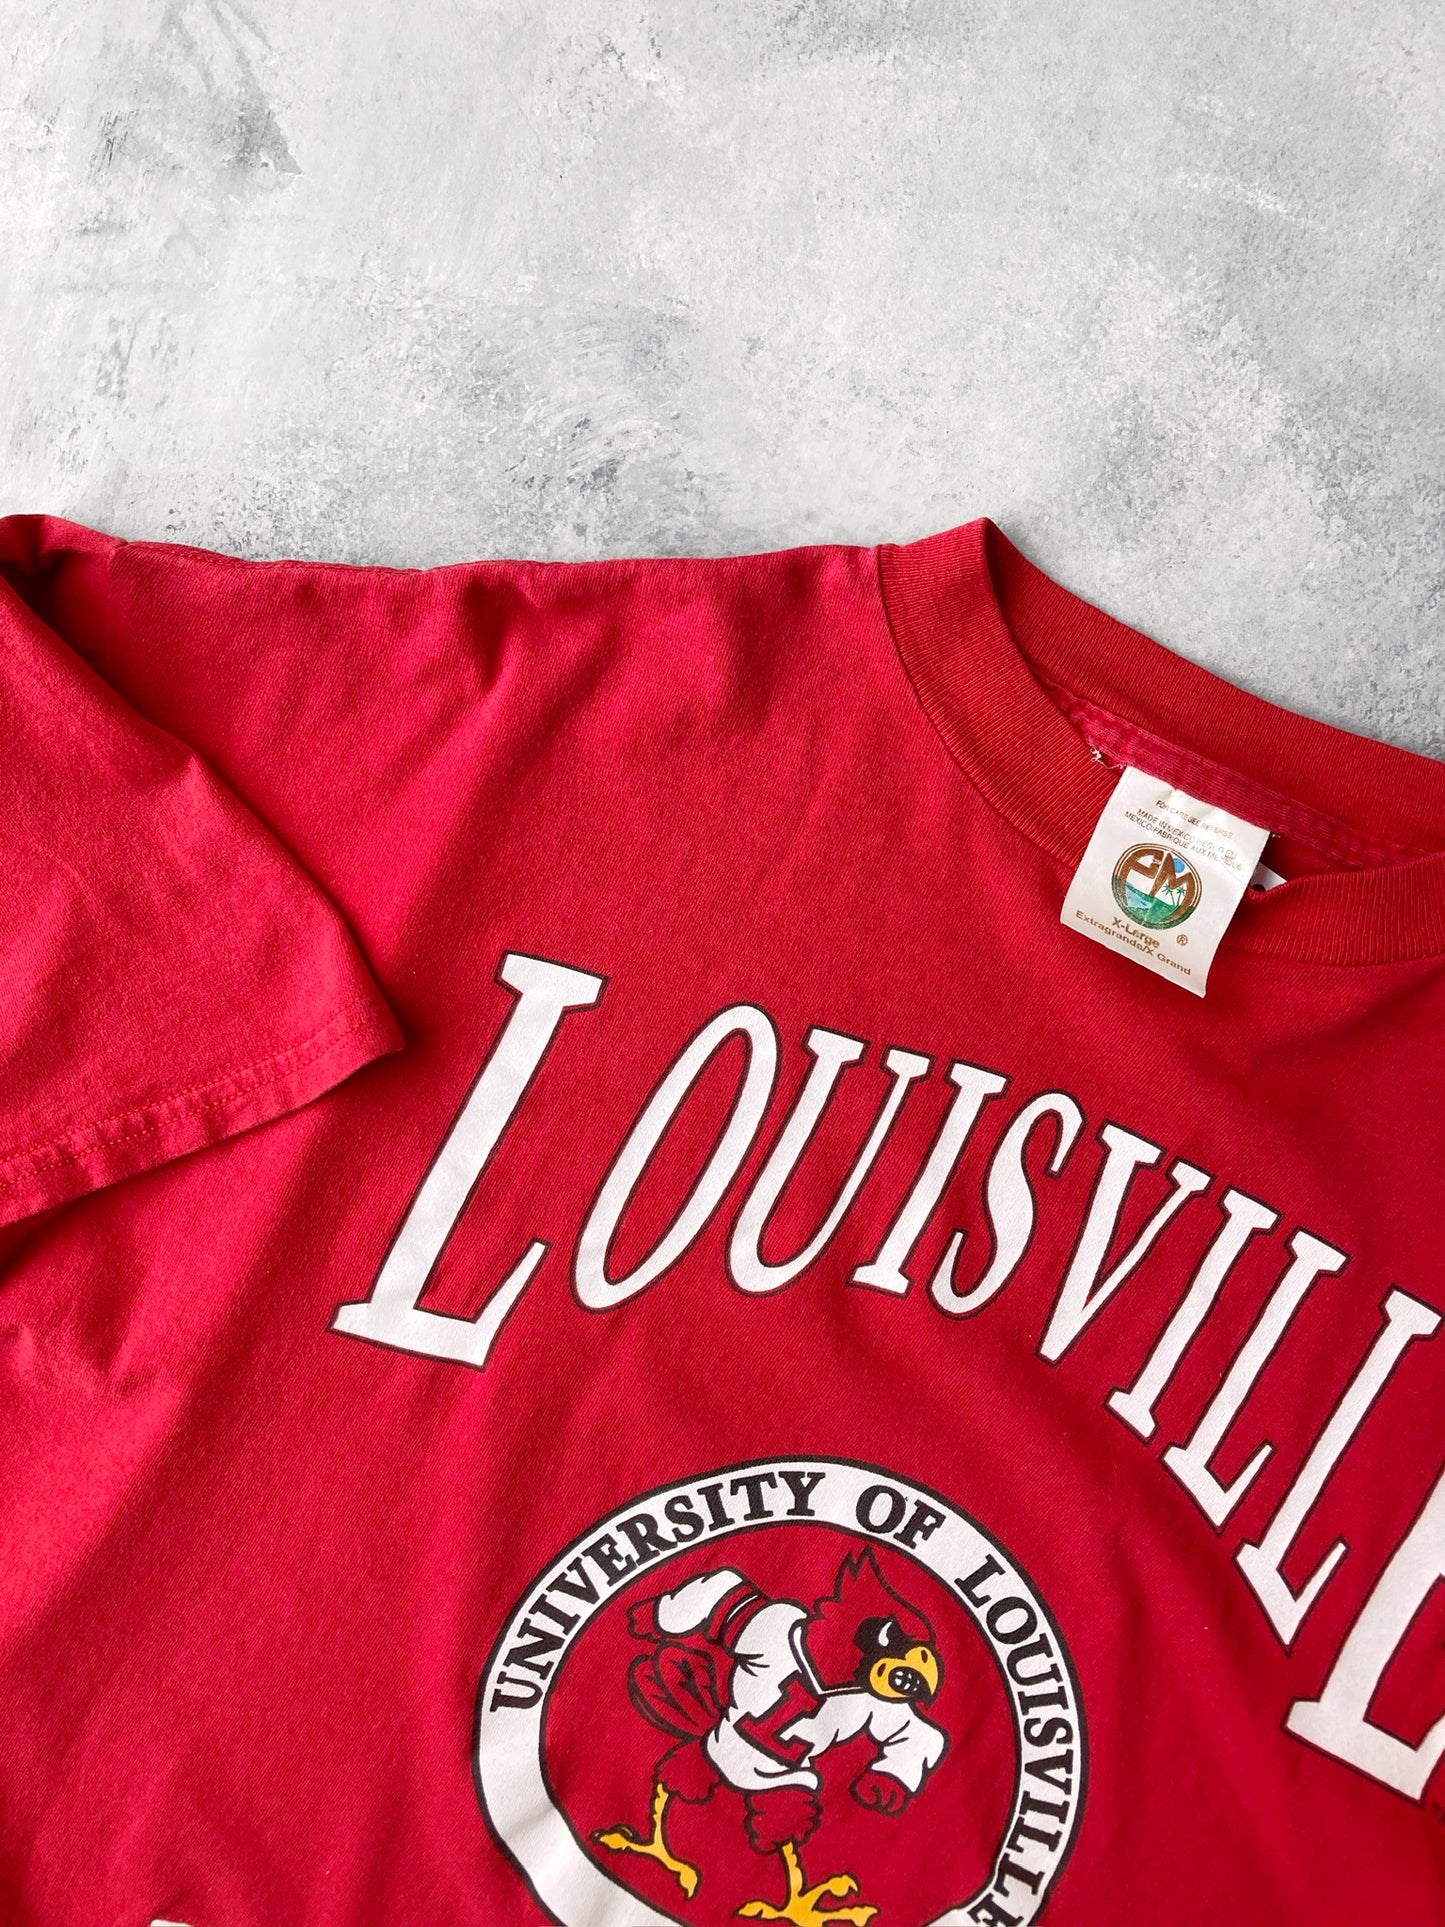 Louisville Cardinals T-Shirt 90's - XL